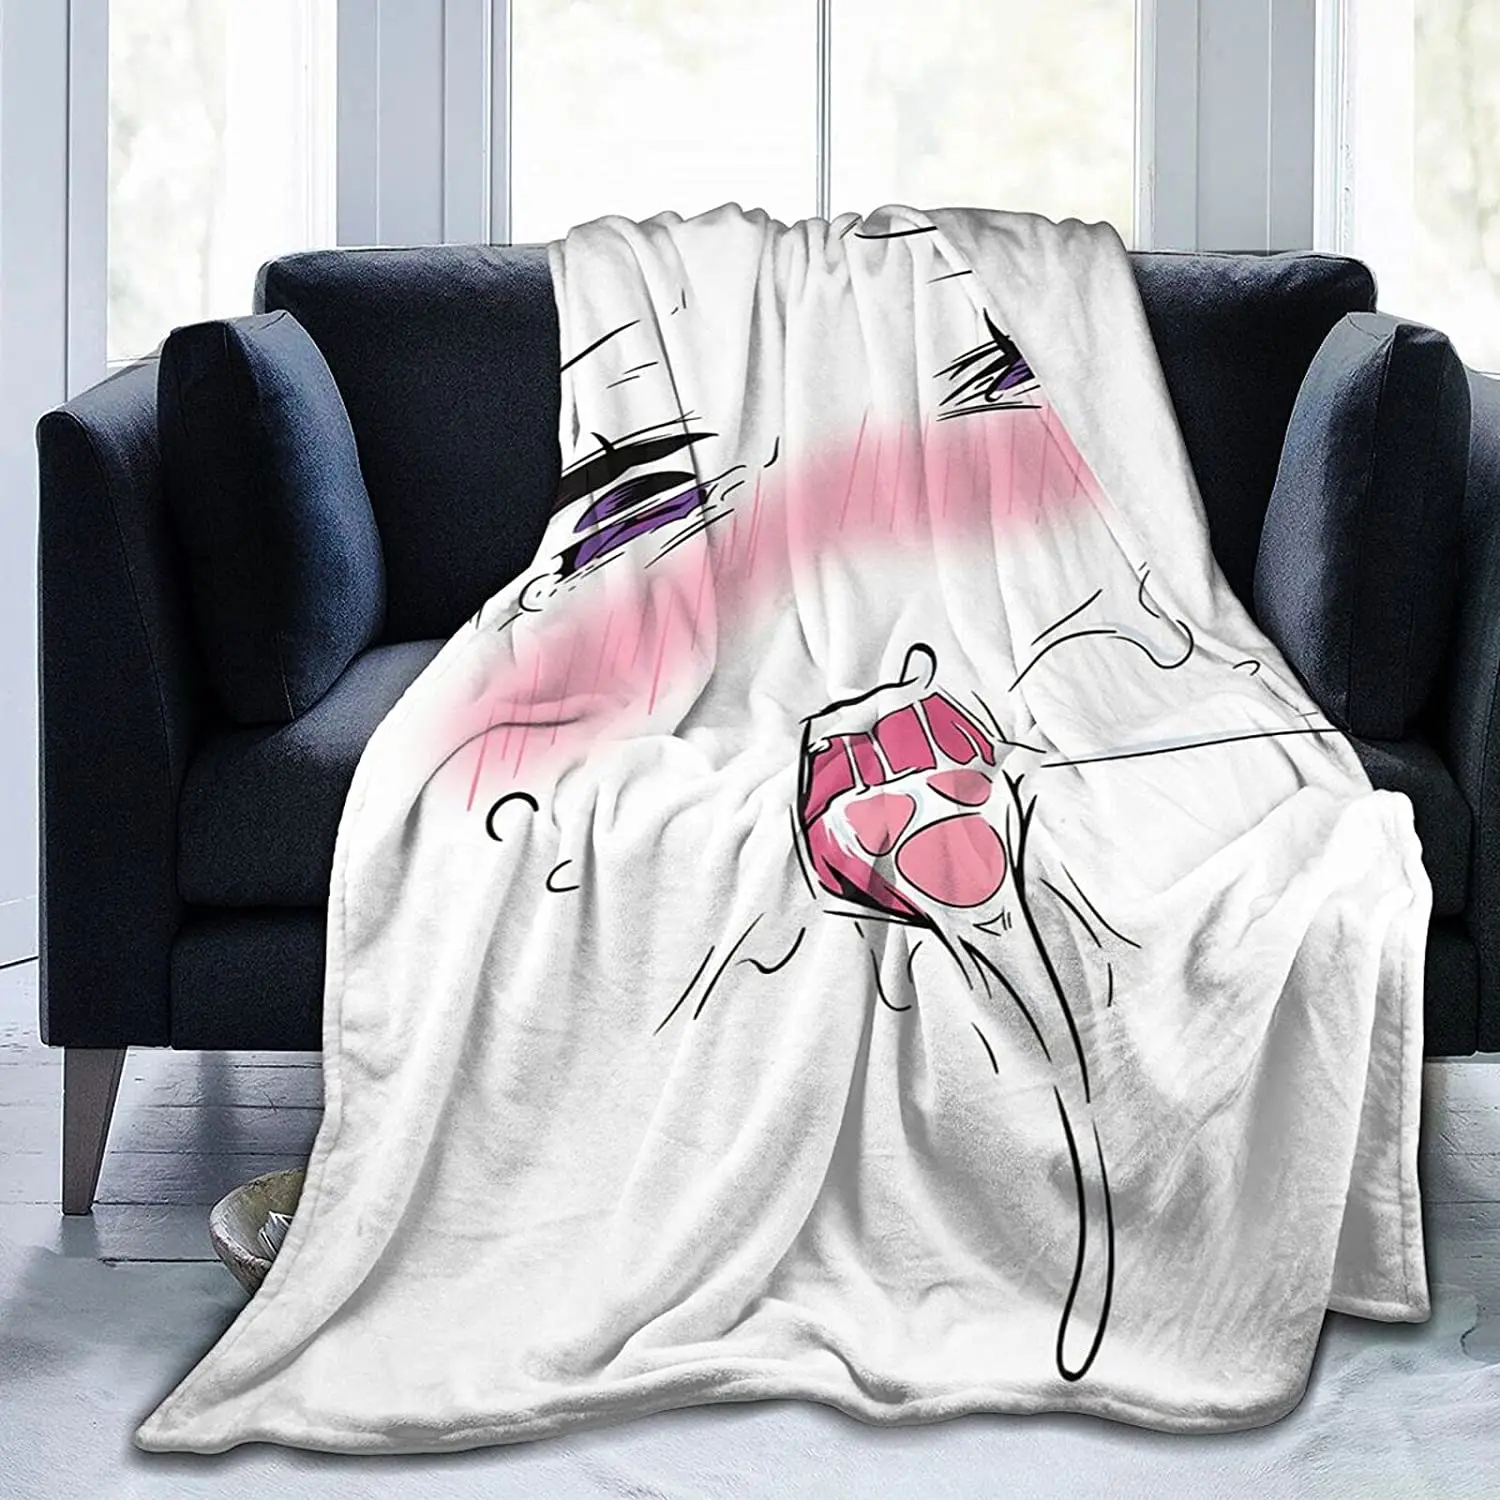 RandShton Ahegao Anime blanketFlannel Blanket AntiPilling Super Soft Blanket AllSeason Lightweight Living Warm Blanket